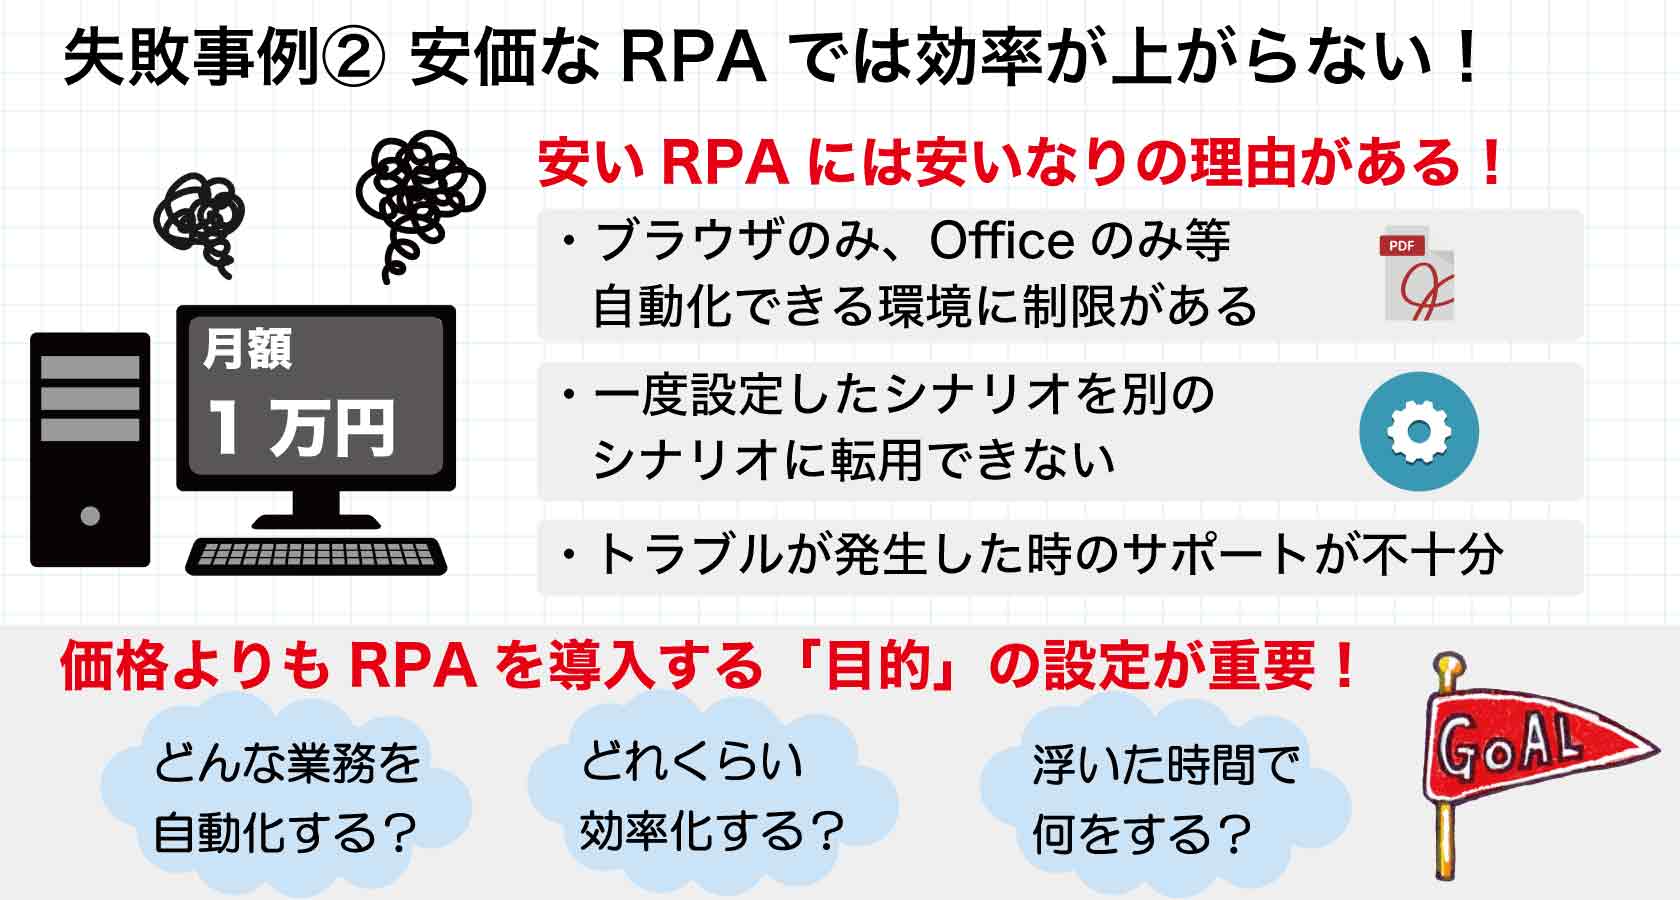 R P A導入の失敗事例解説2安いRPAシステムは選ぶべきではない